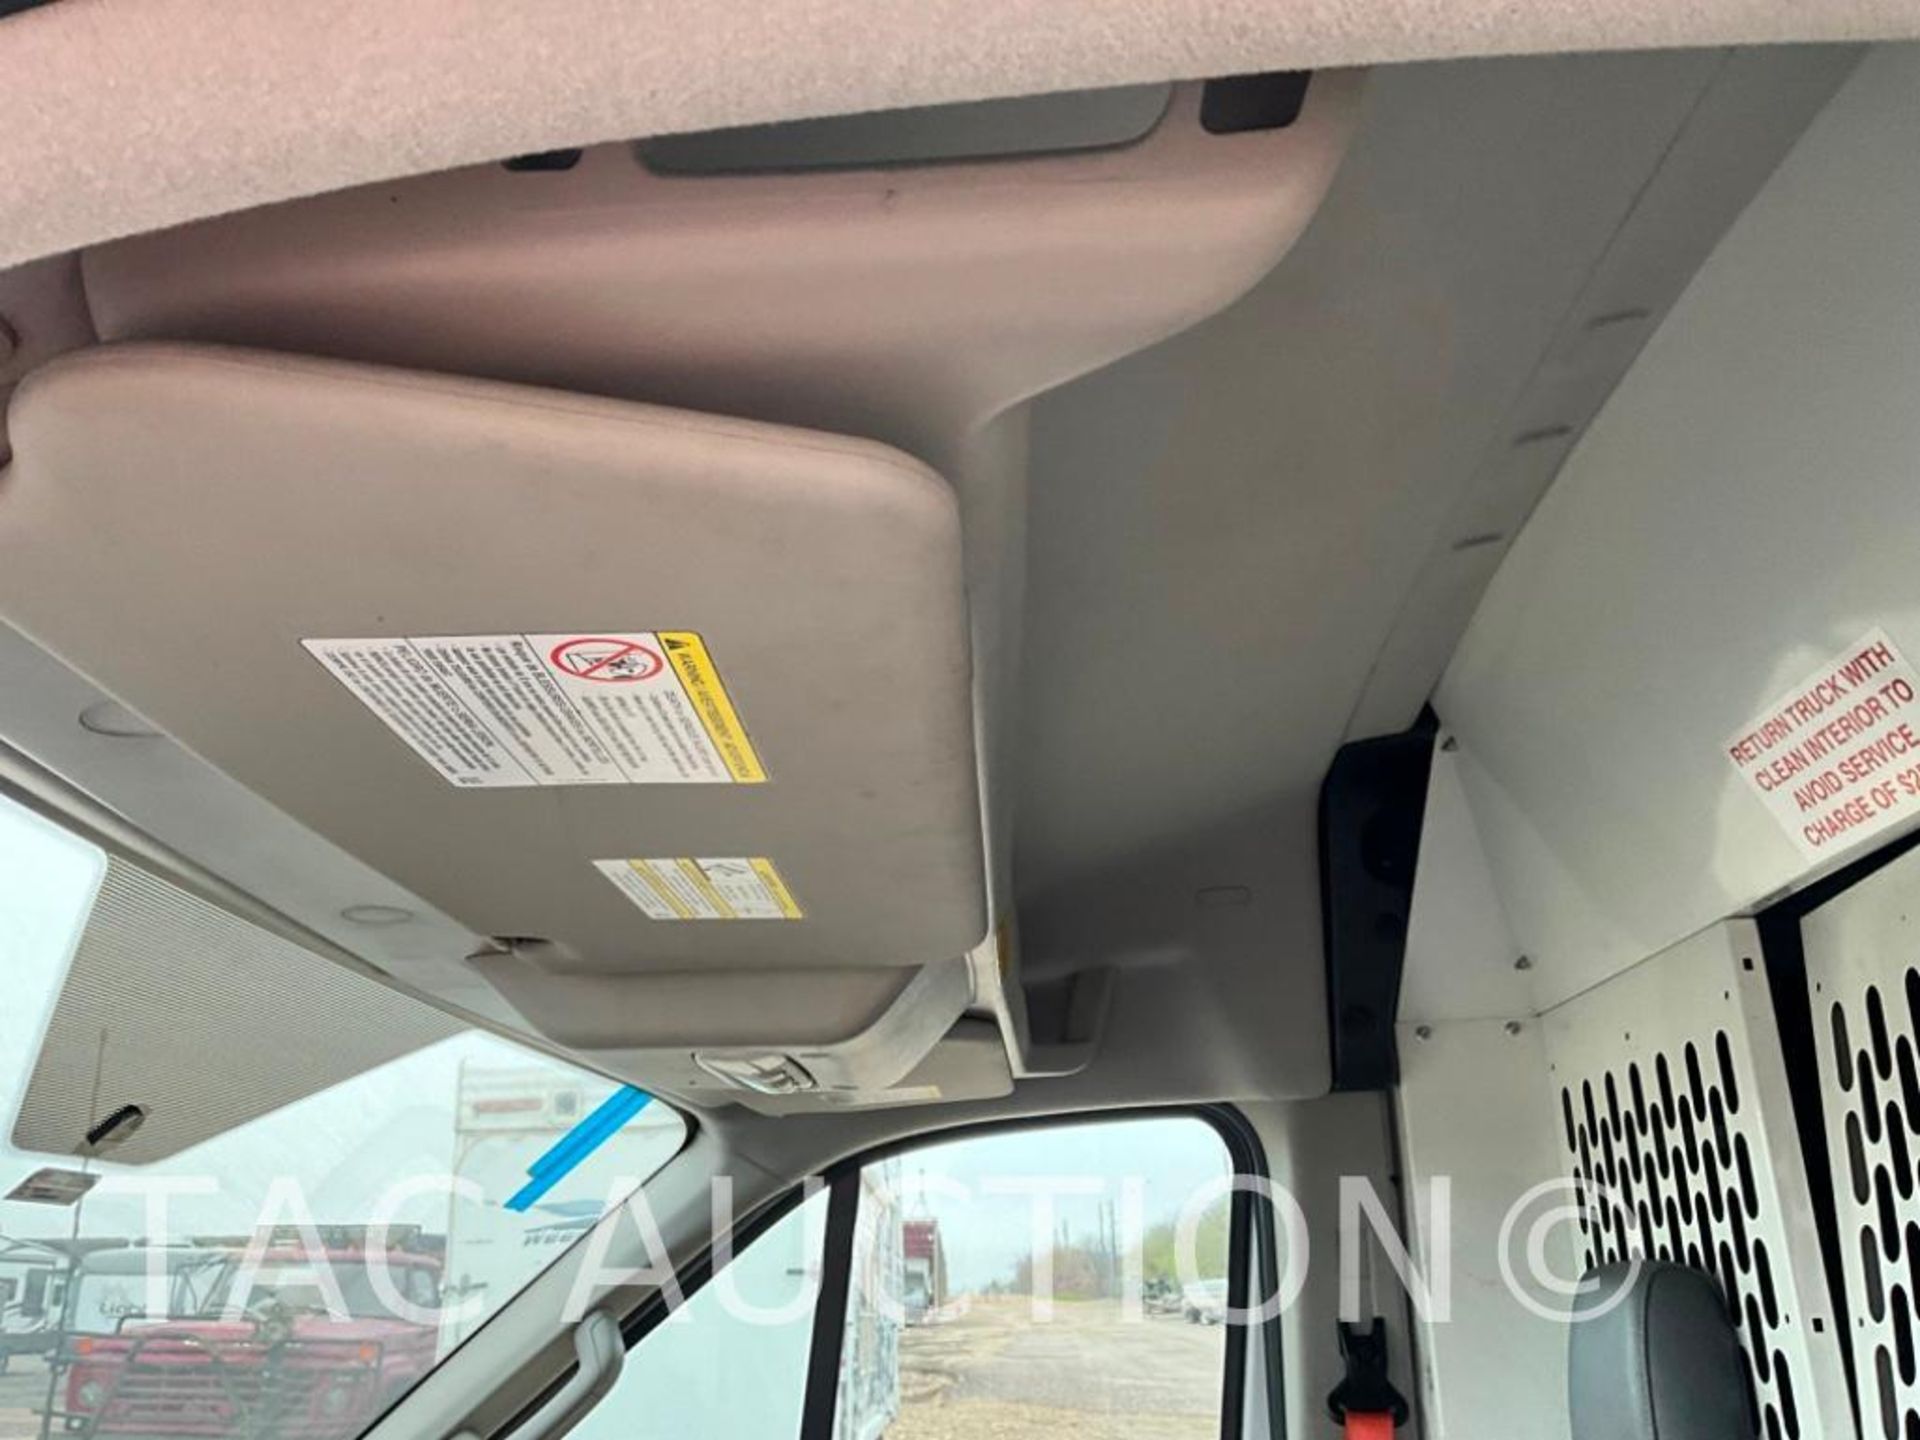 2019 Ford Transit 150 Cargo Van - Image 14 of 50